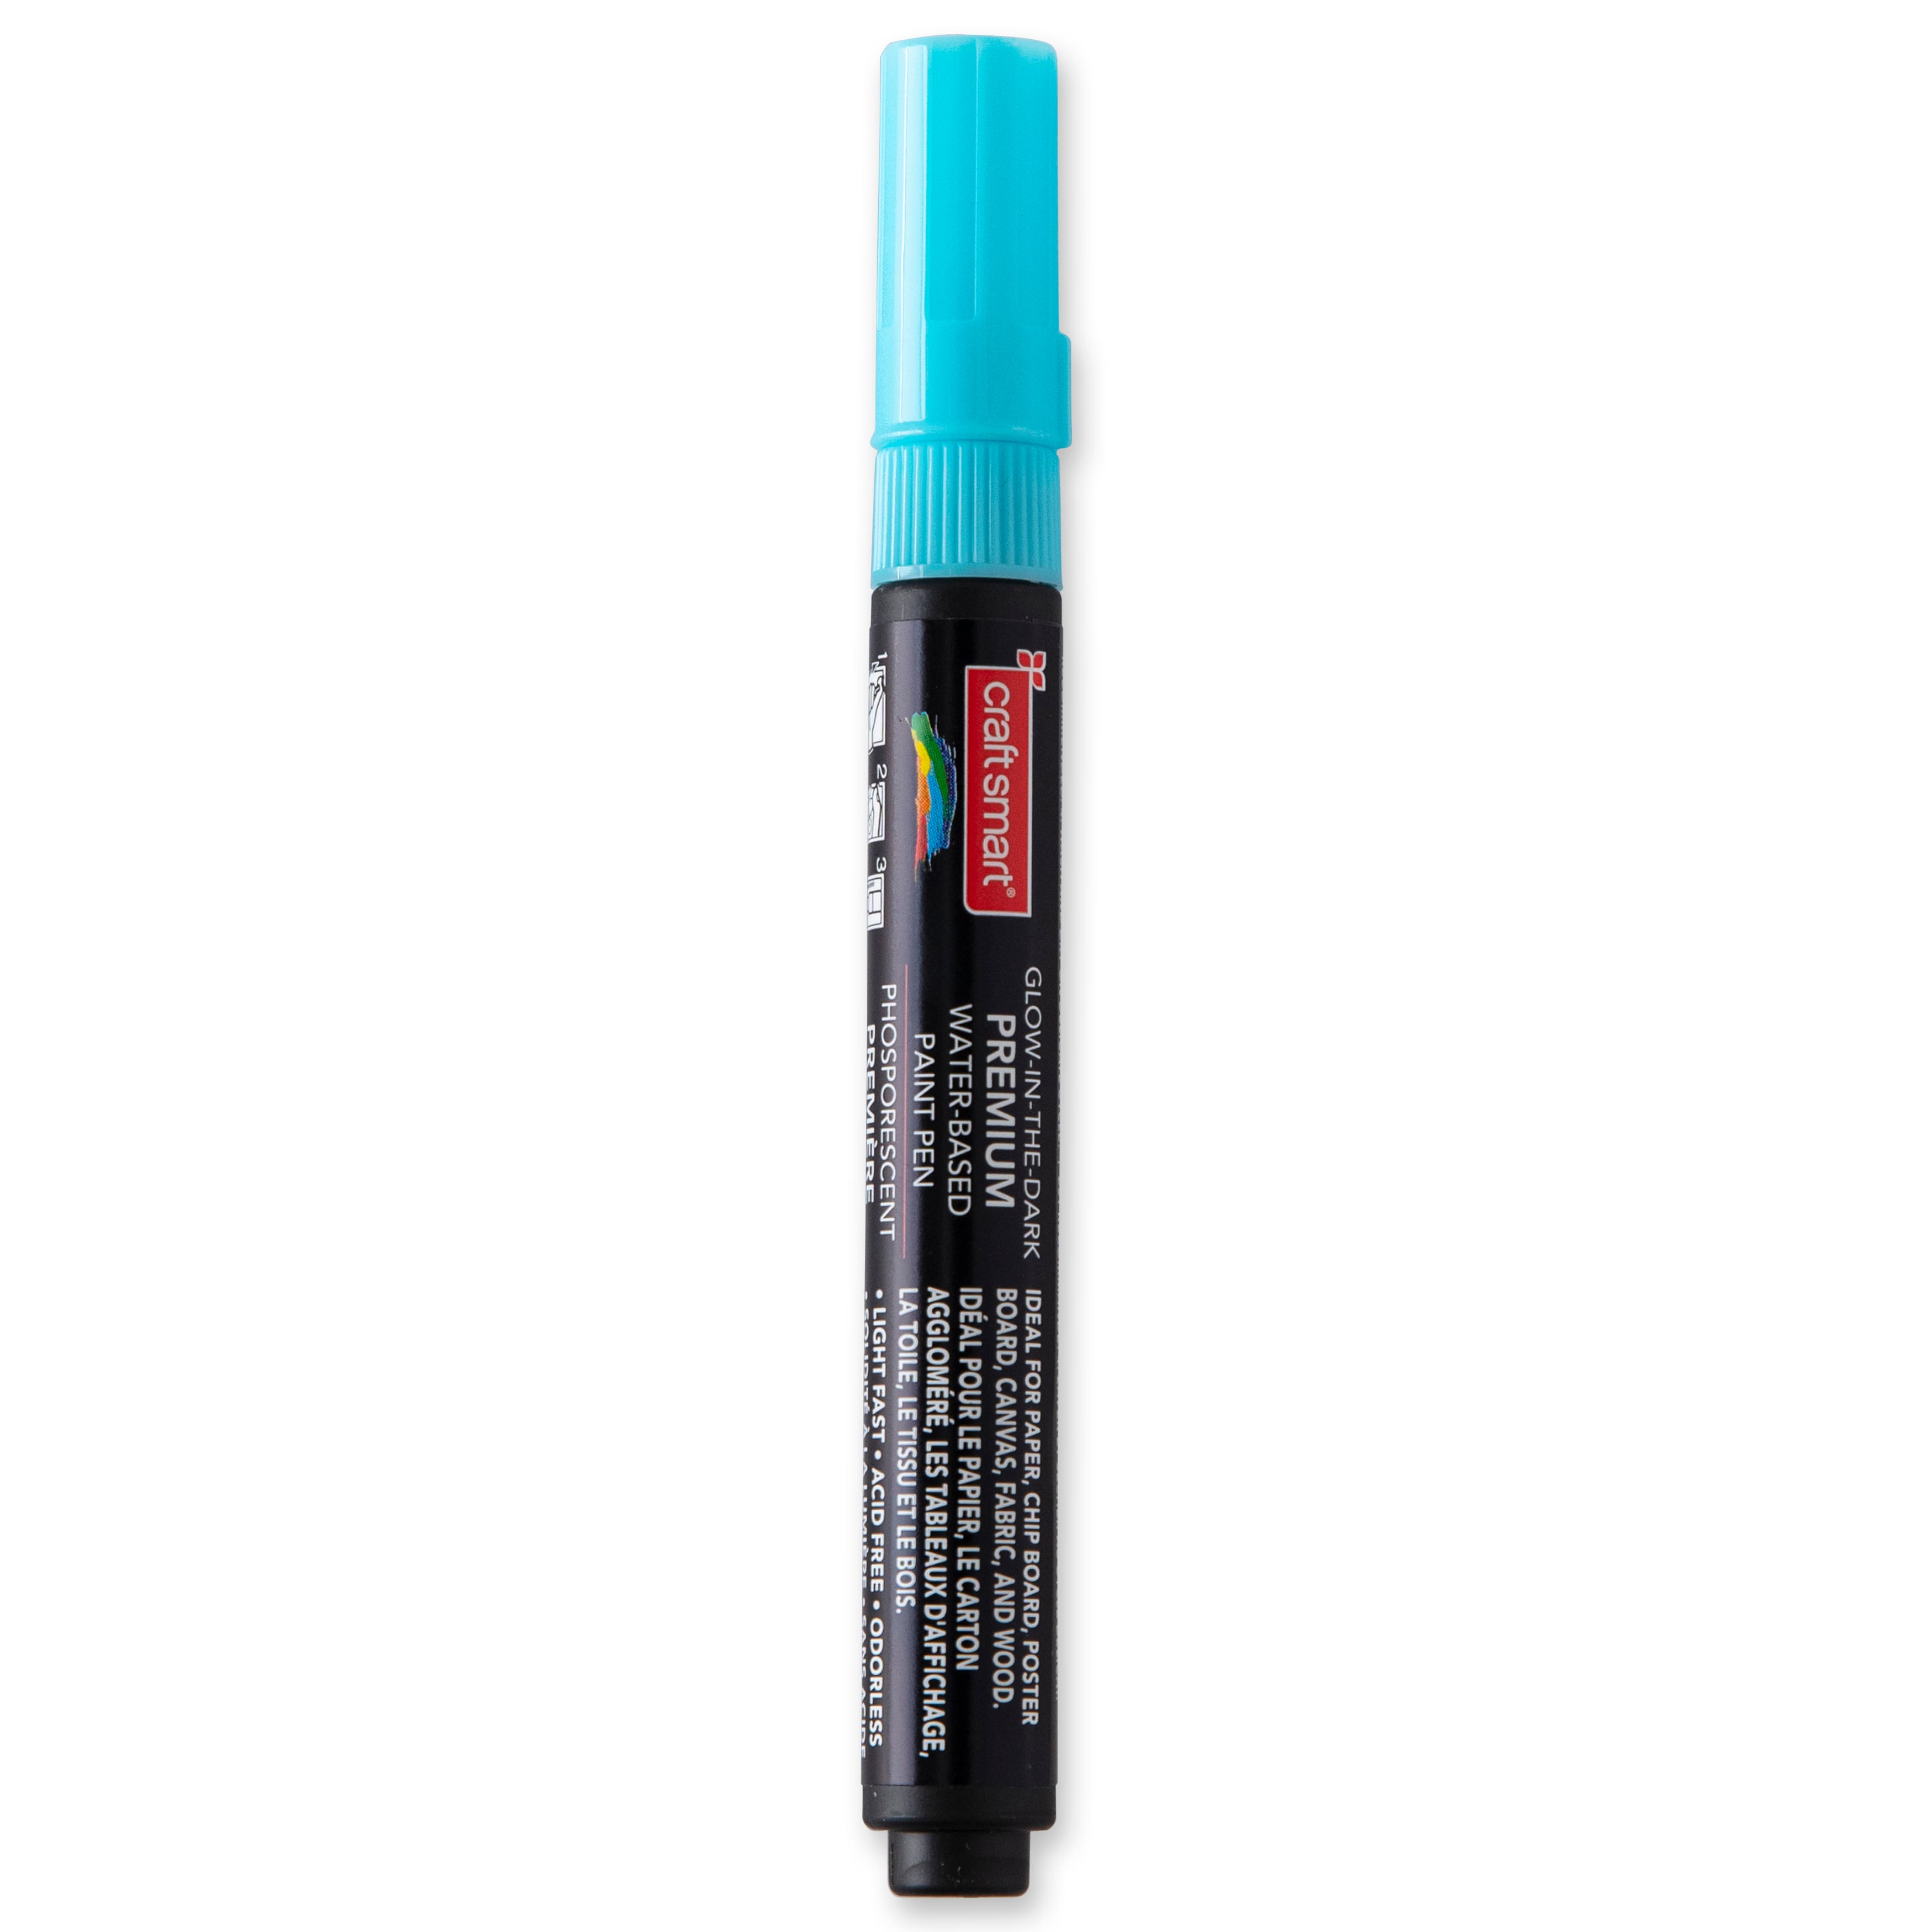 12 Pack: Premium Medium Tip Glow-in-the-Dark Water-Based Paint Pen by Craft Smart&#xAE;